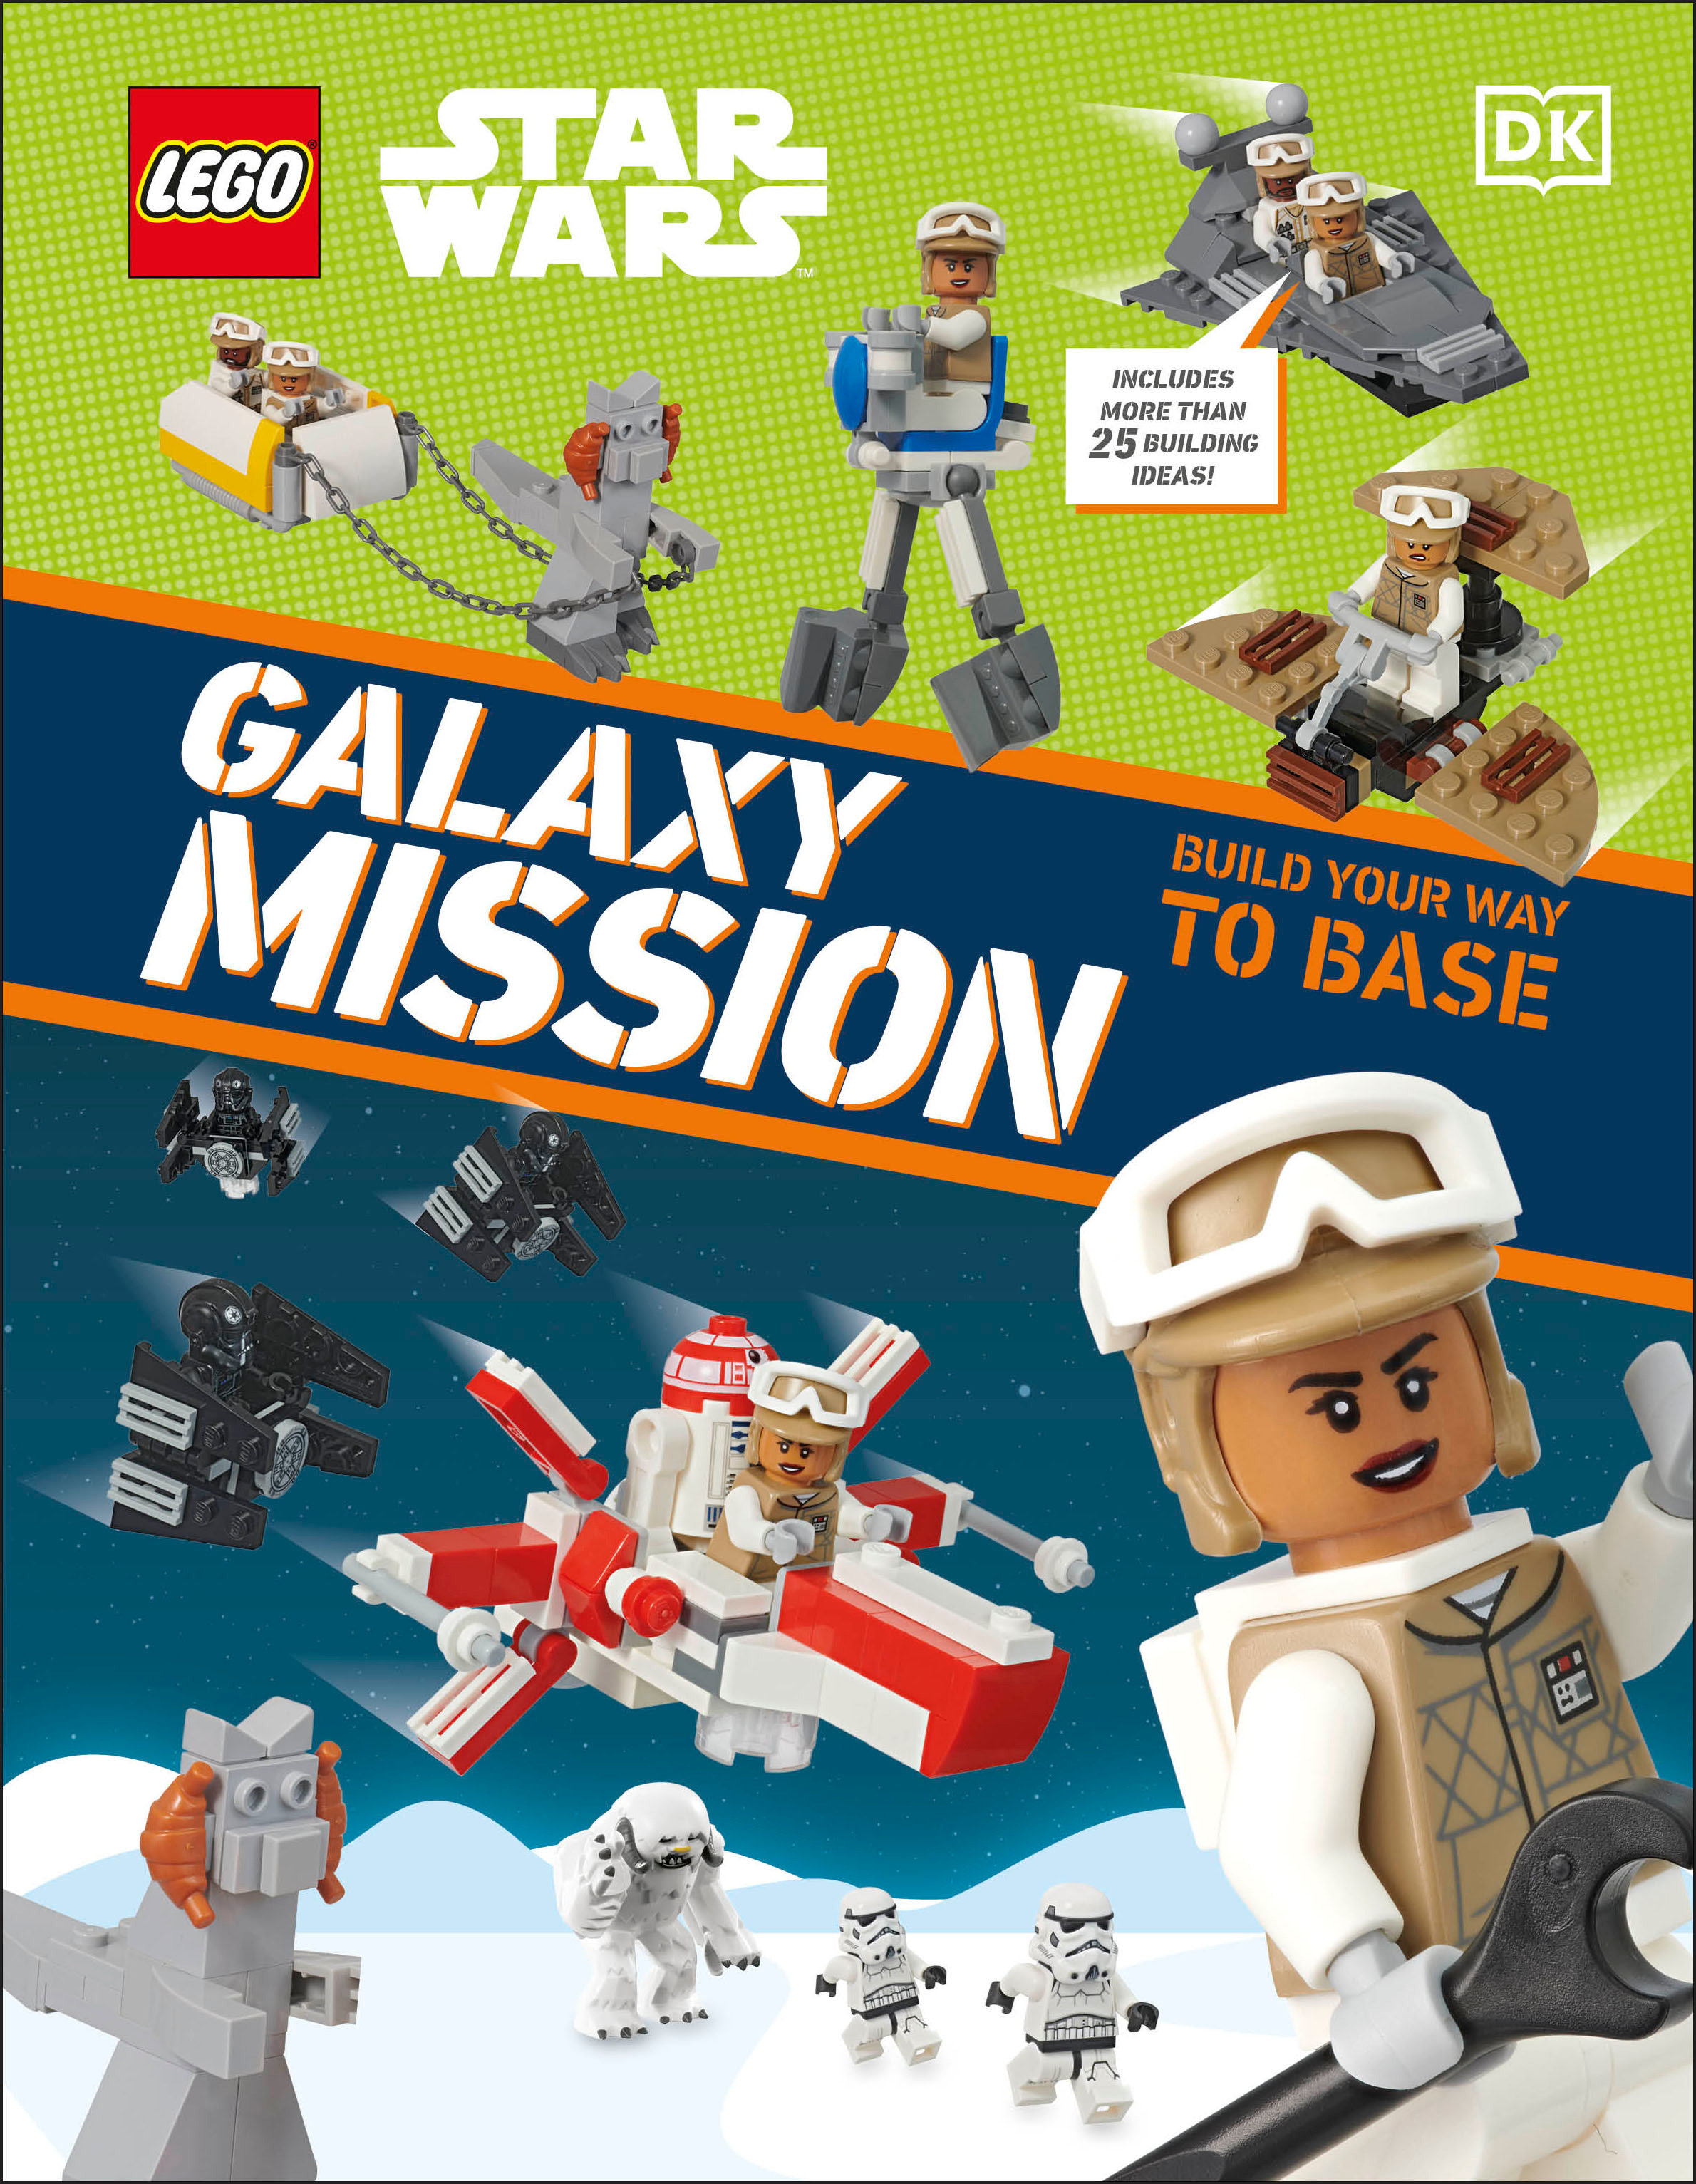 Lego Star Wars Galaxy Mission Hardcover